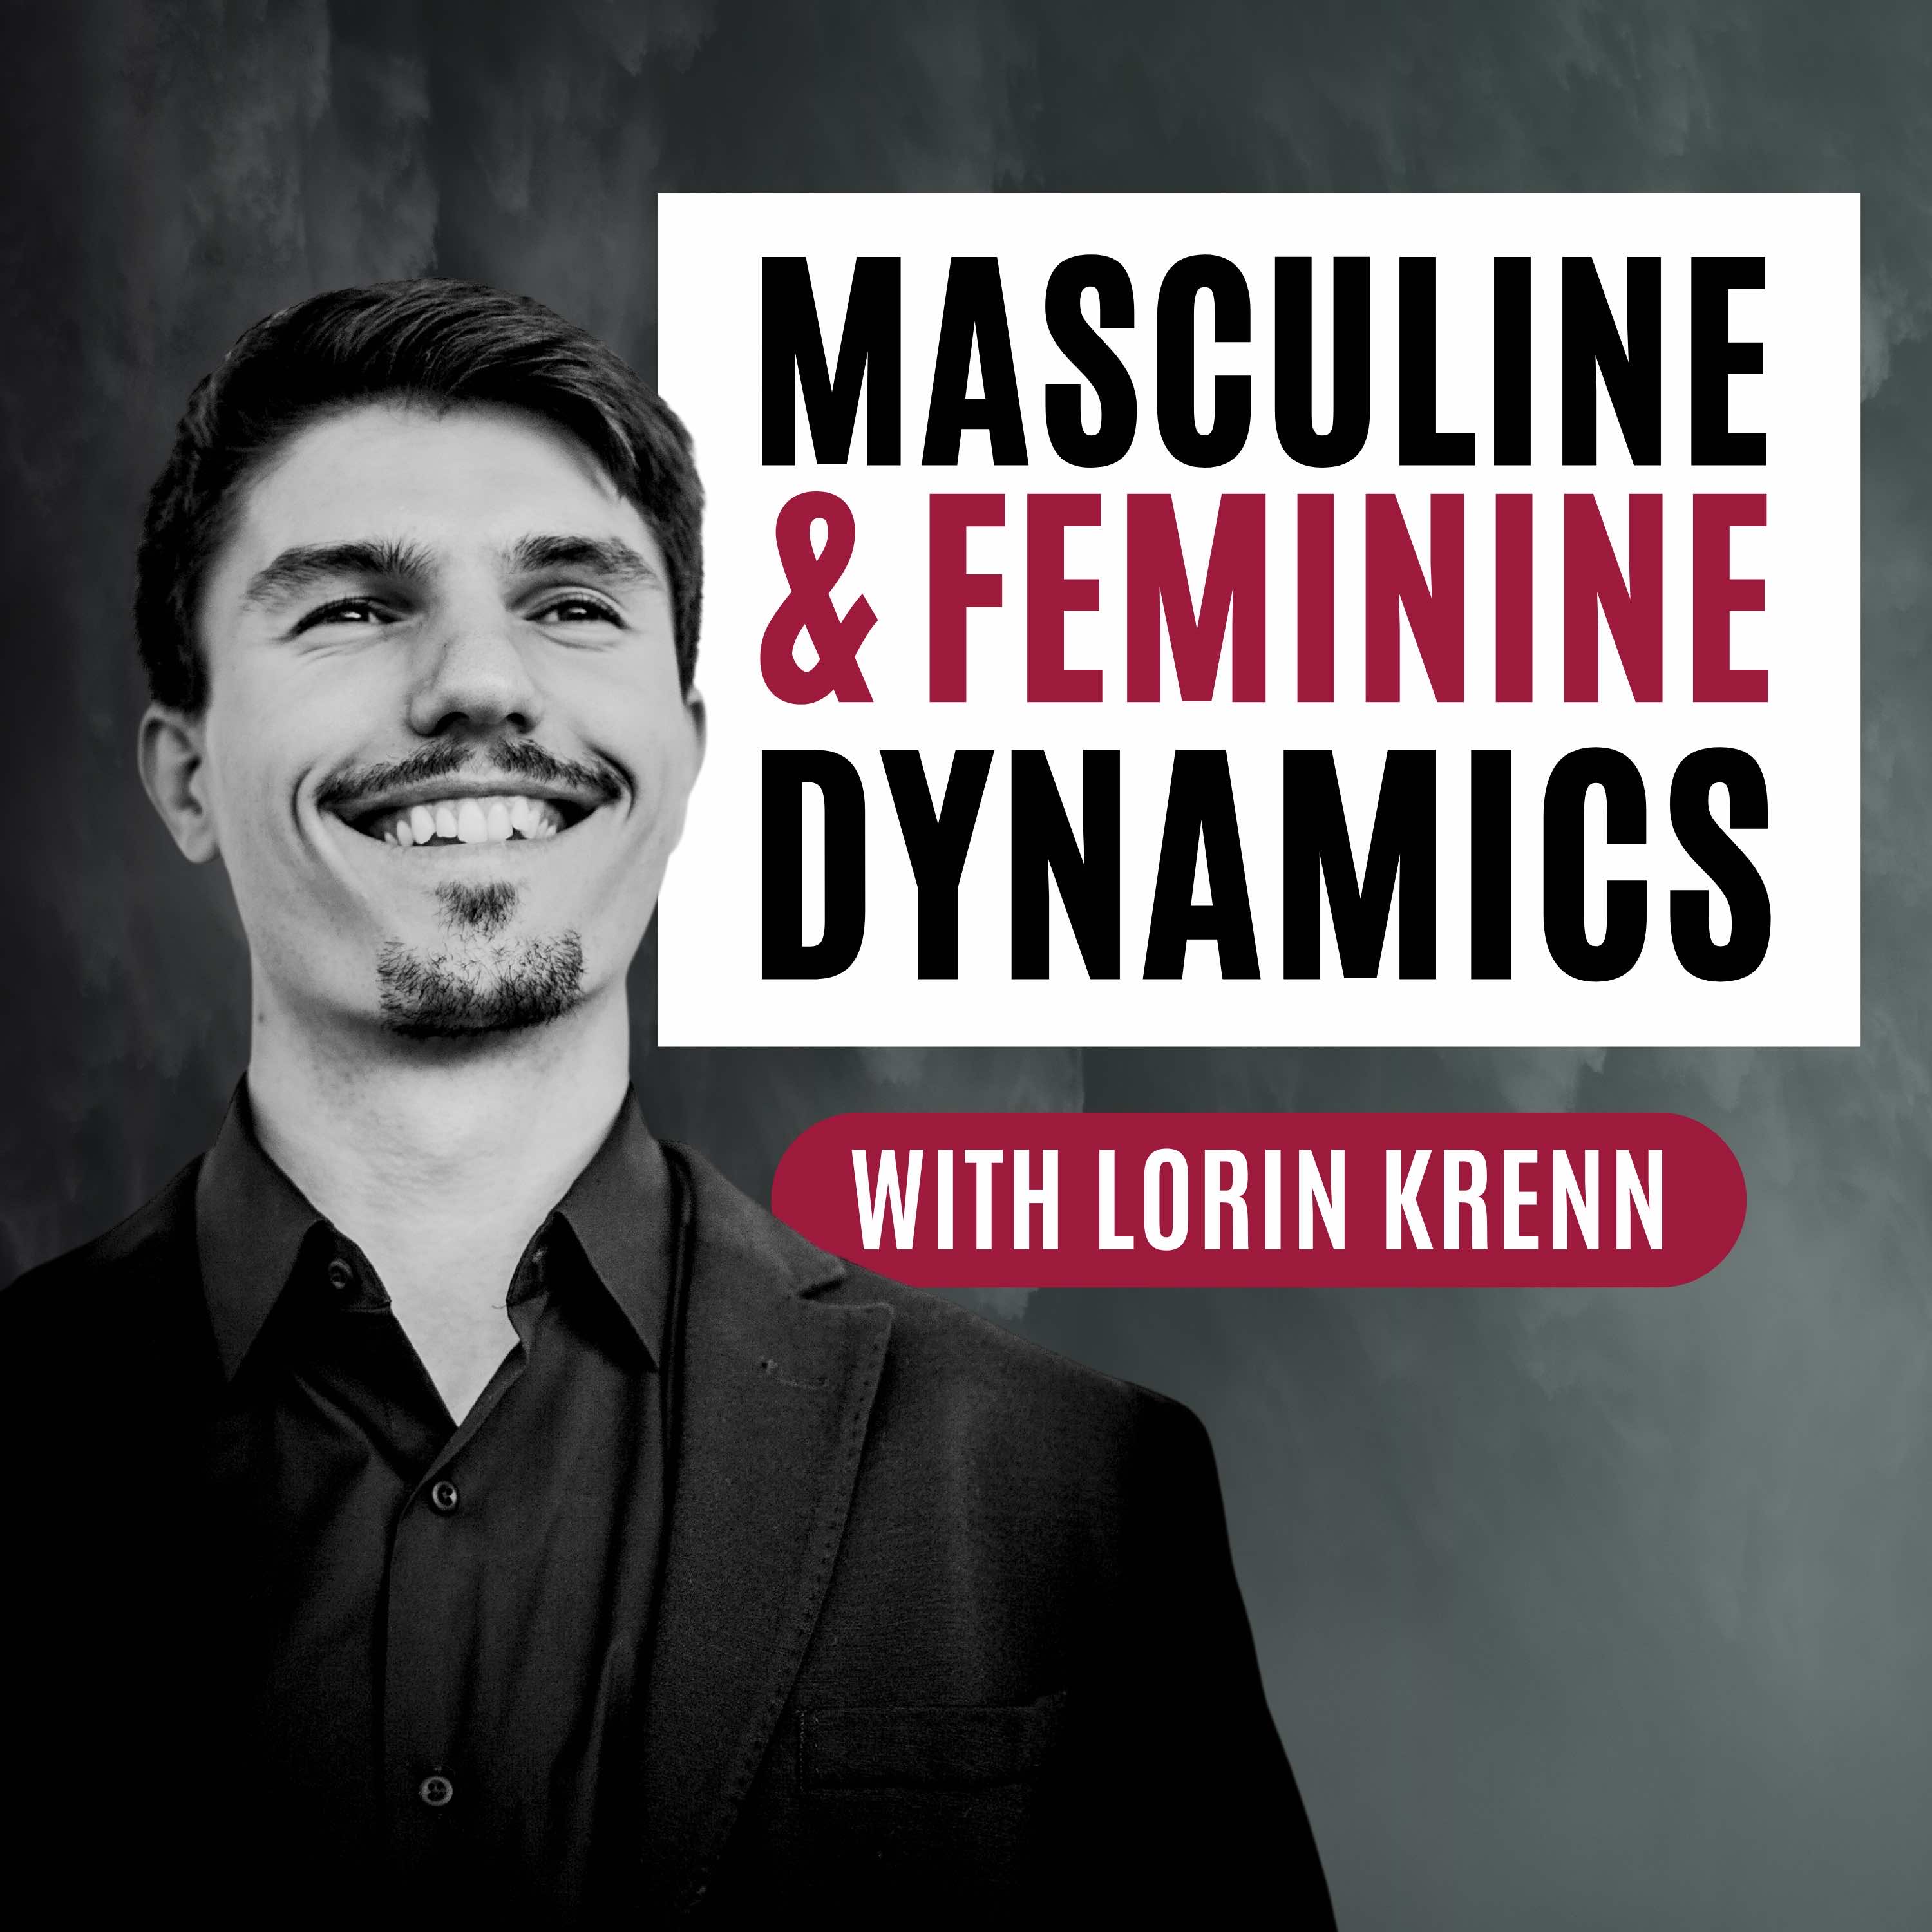 Artwork for podcast Masculine & Feminine Dynamics